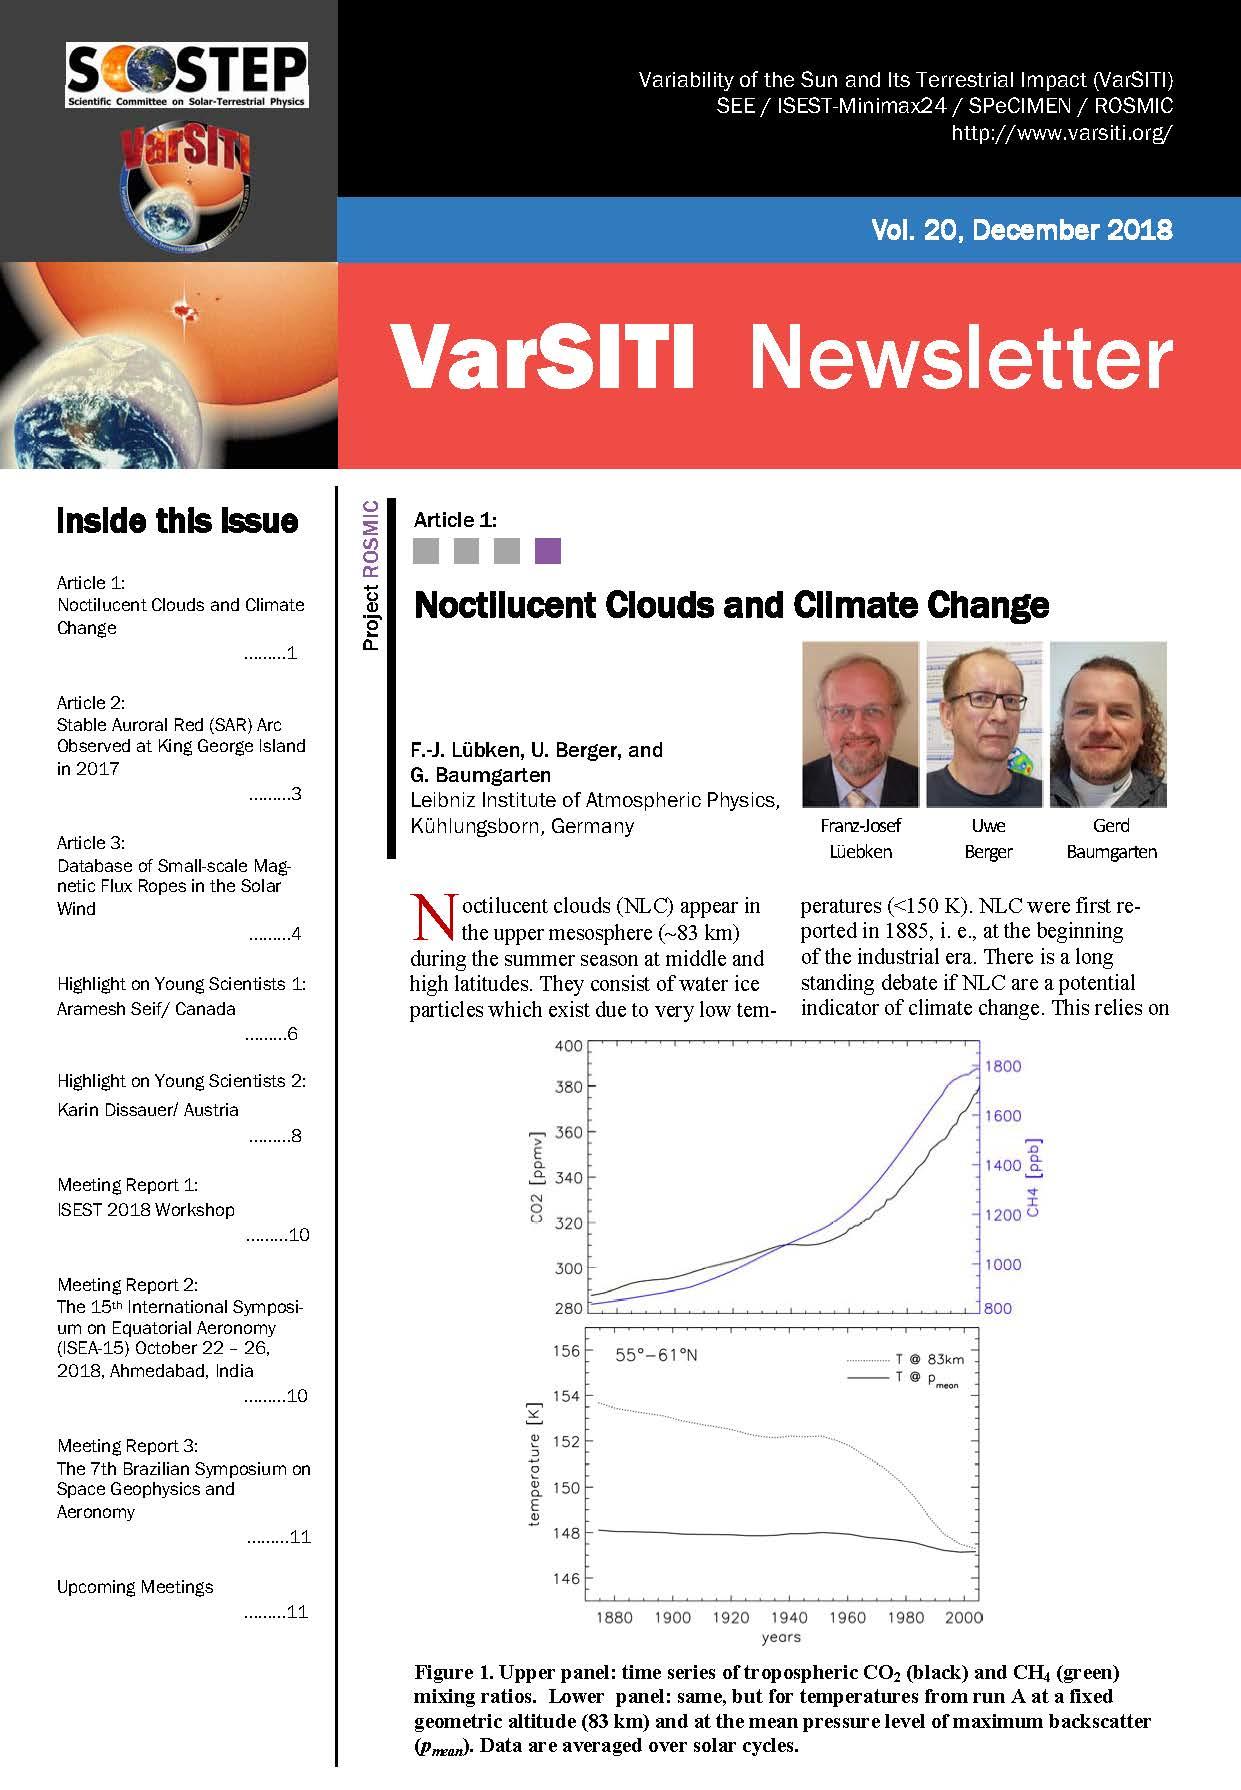 VarSITI_Newsletter_Vol20.jpg